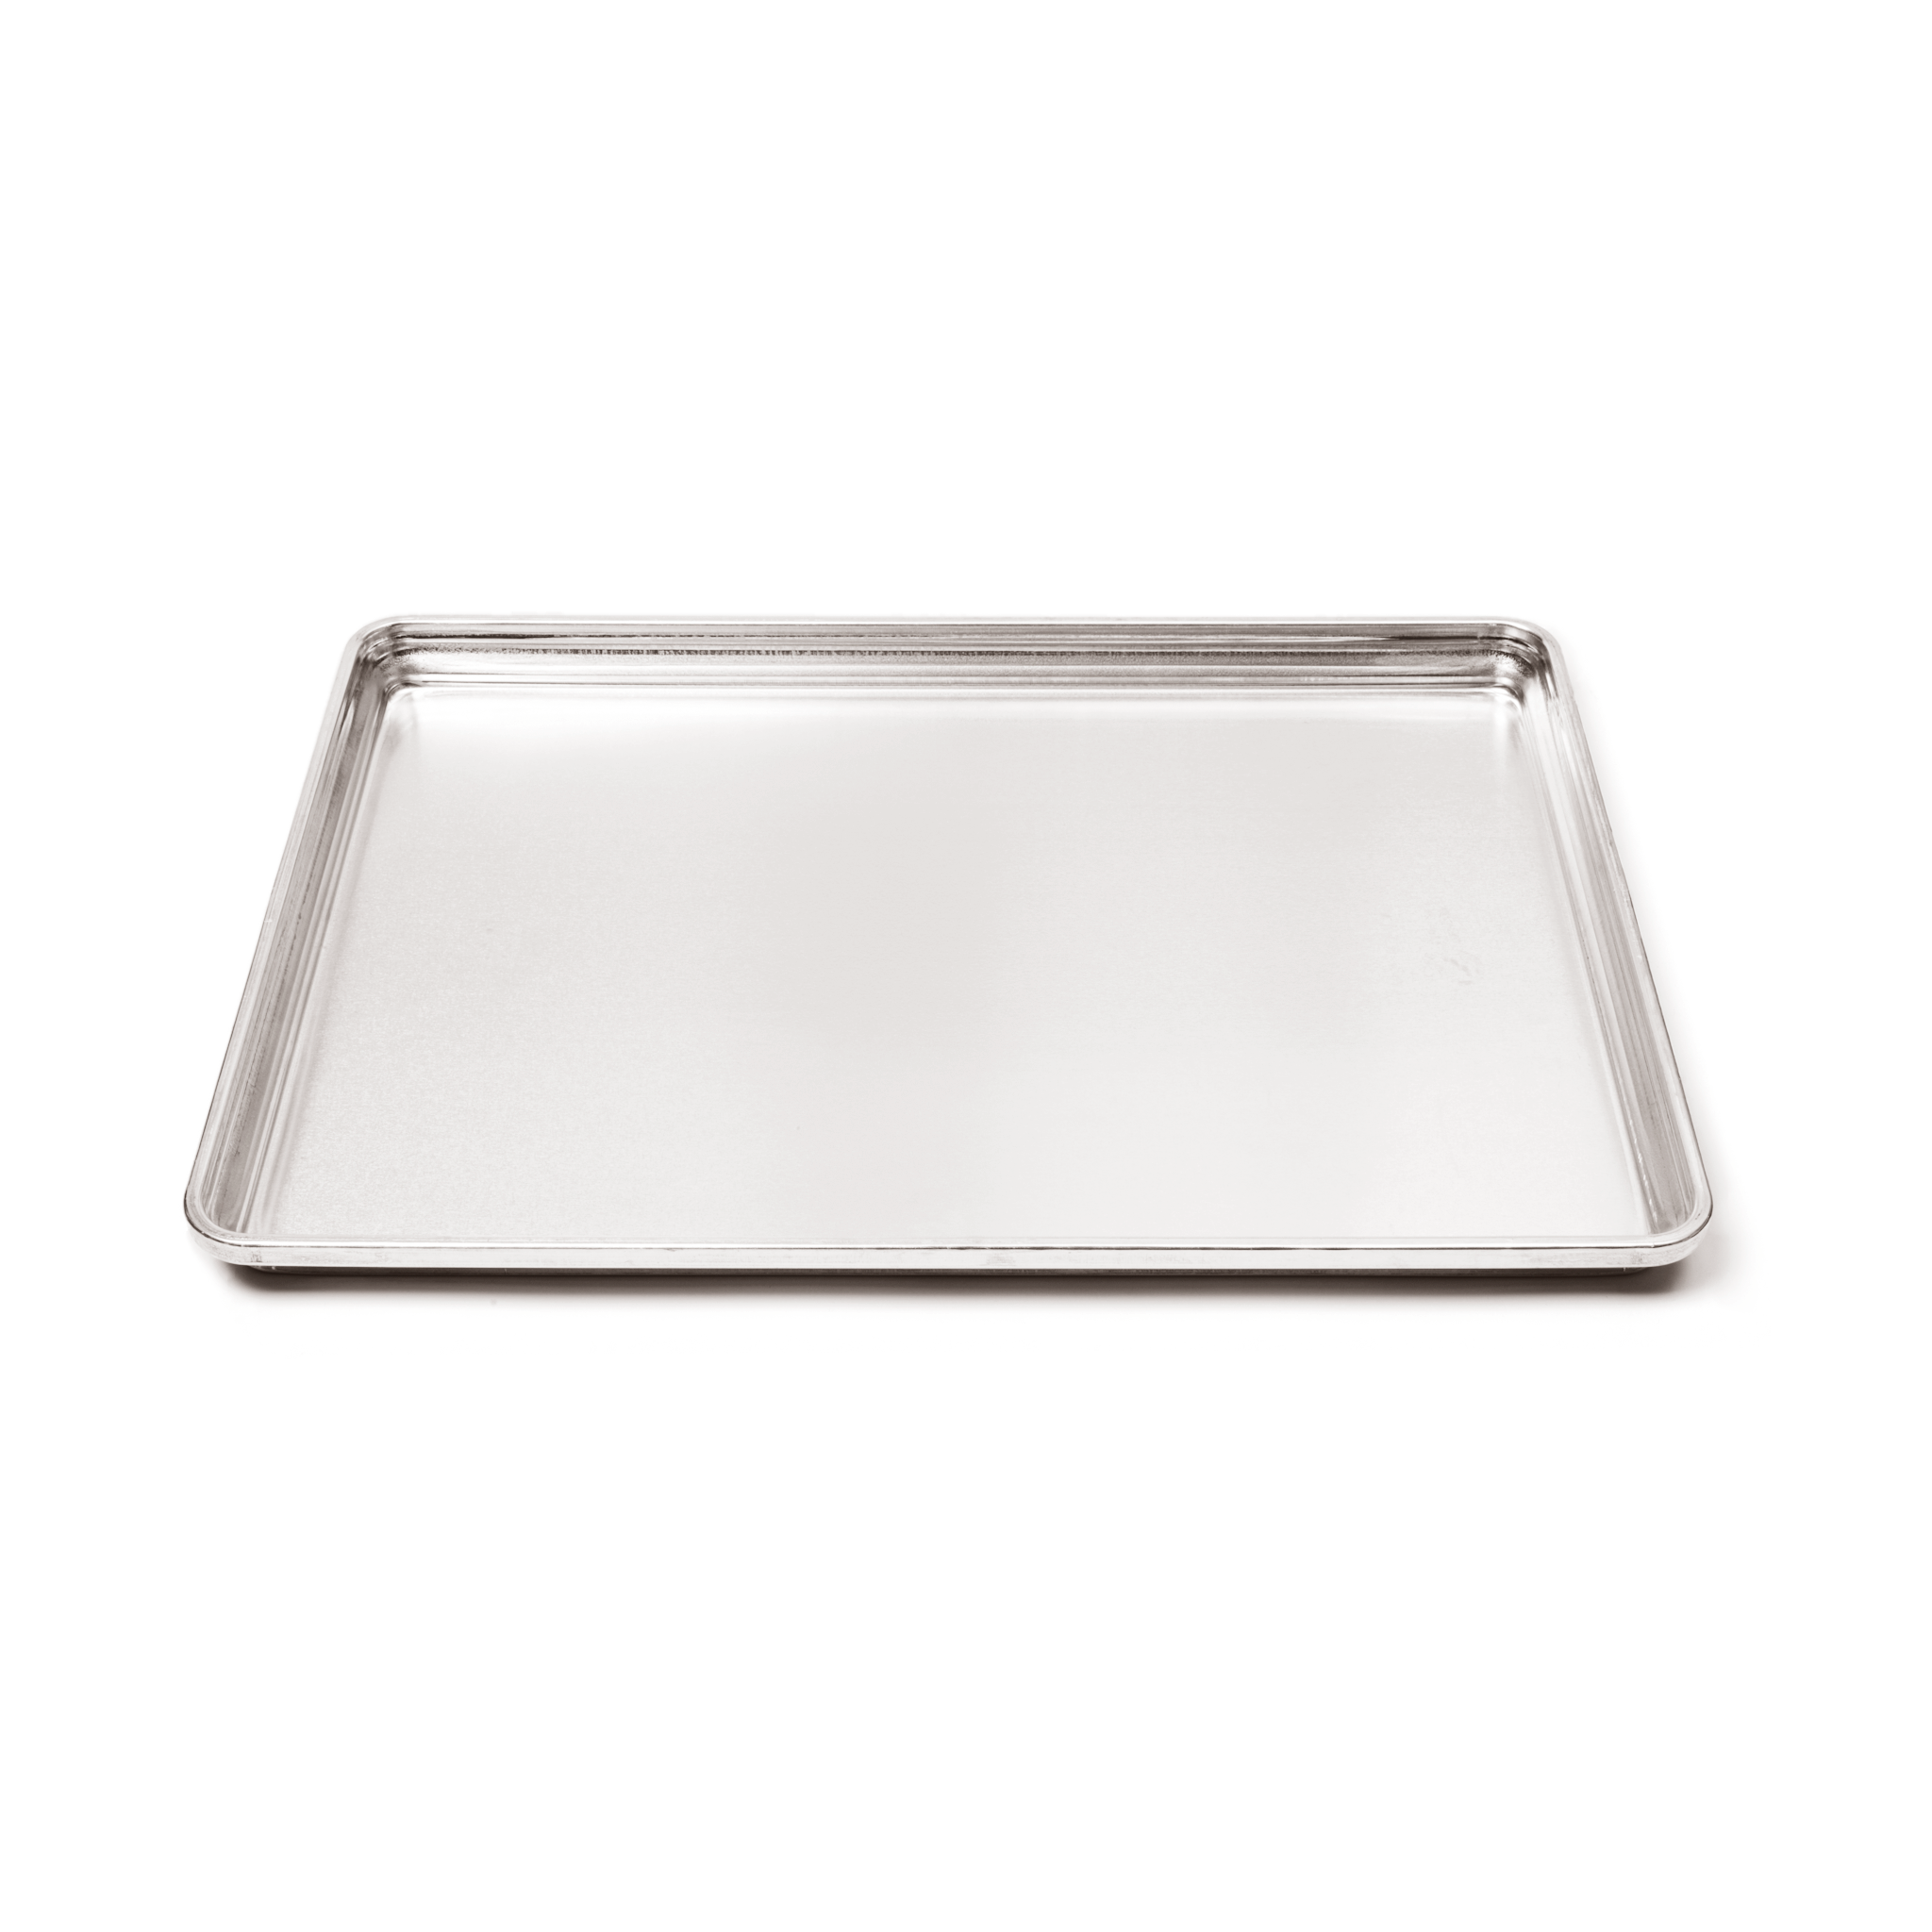 Aluminum Quarter Sheet Baking Pan size, Steel Nonstick Cookie Sheet, S